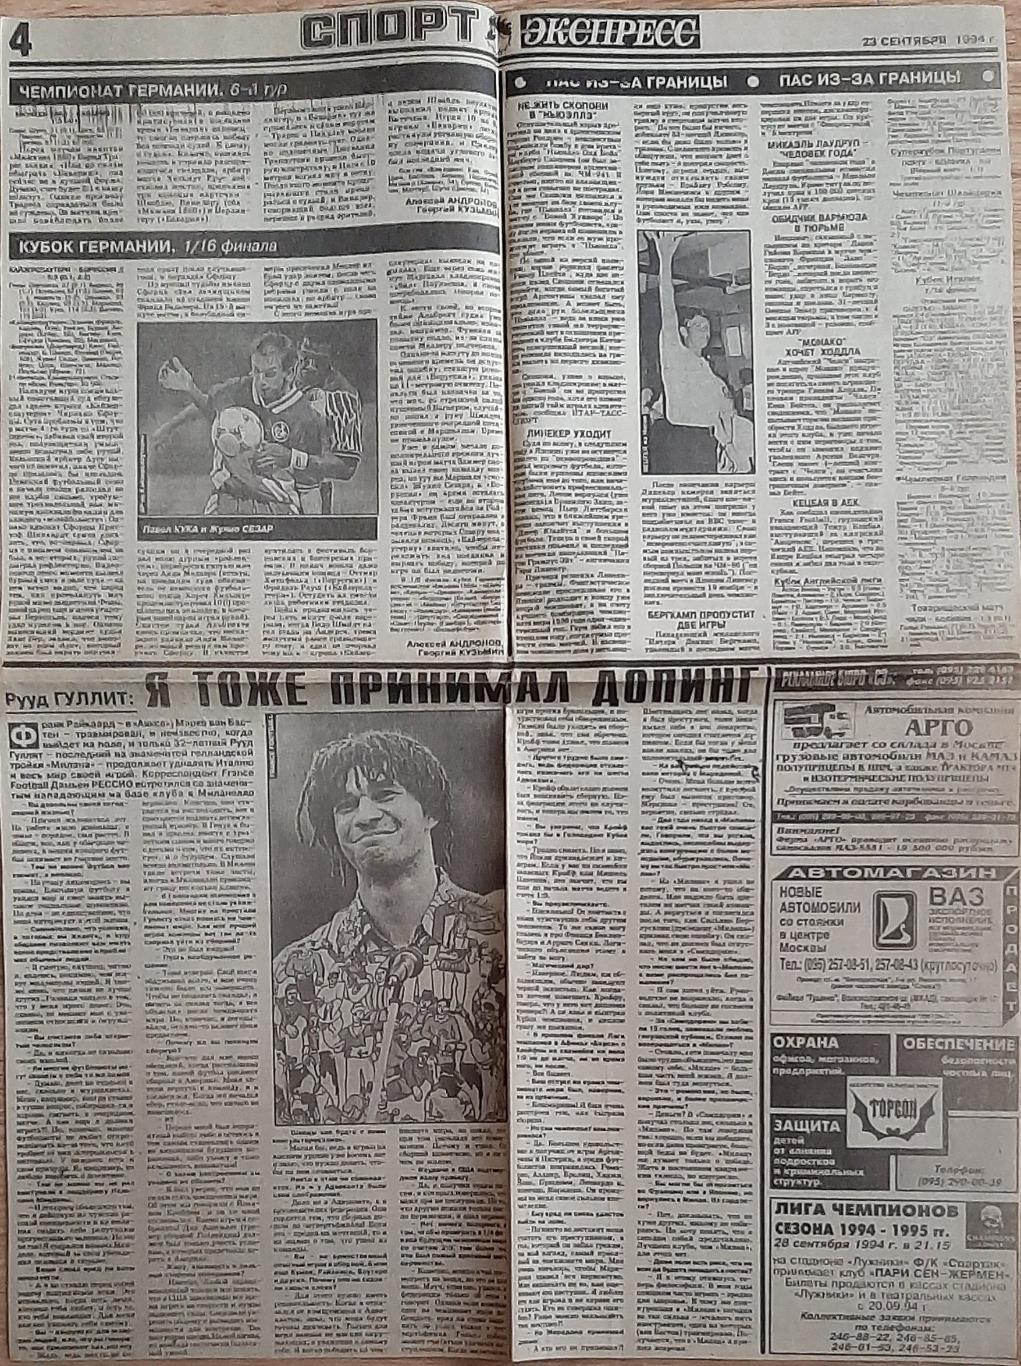 Вирізка з газети Спорт Экспресс (23.09.1994) Леоненко, Гуллит. 1